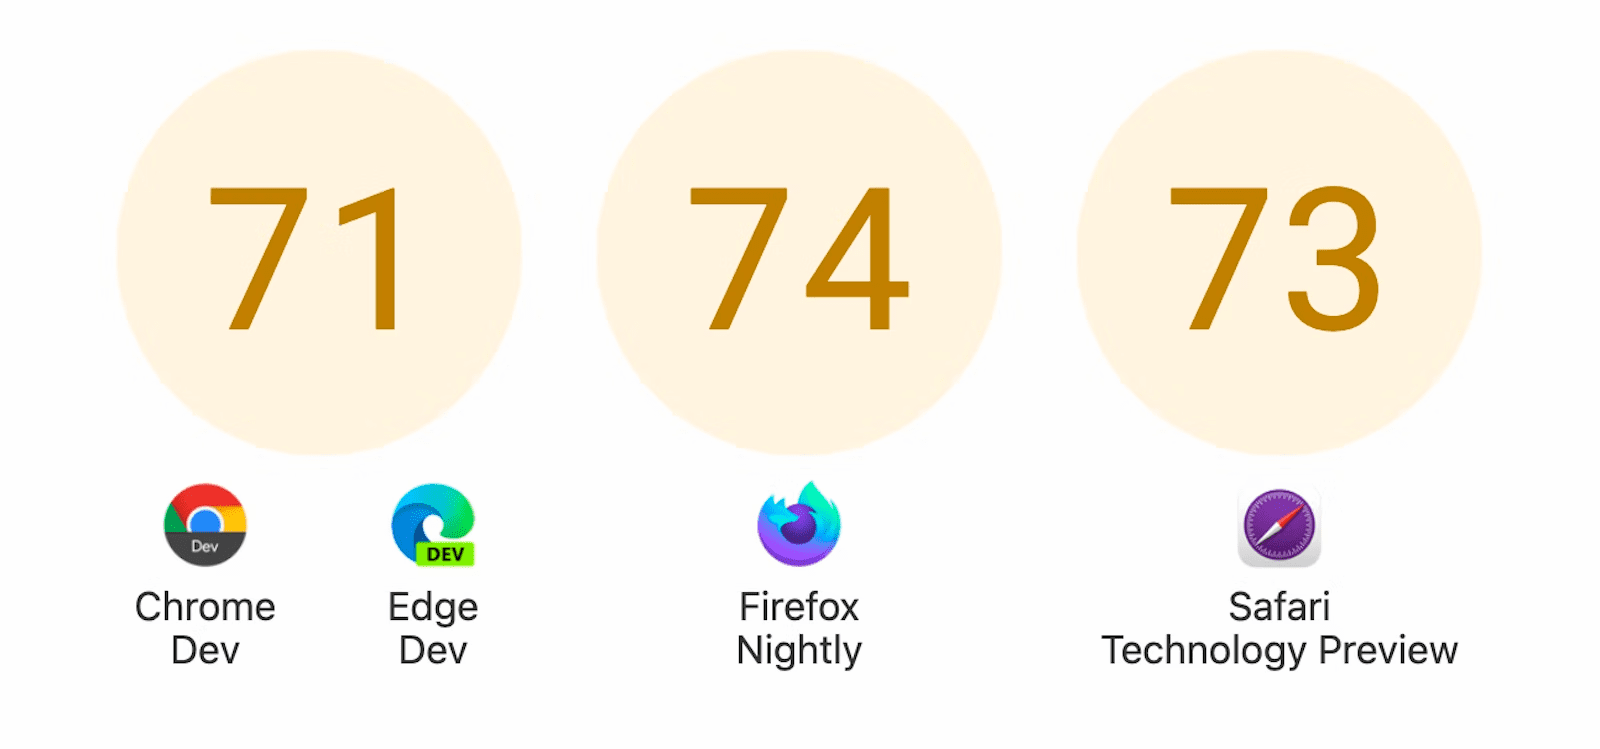 عرض ثلاث دوائر تحتوي على نتائج: 71 للإصدار Dev وEdge على Dev، و74 لـ Firefox Nightly، و73 لمعاينة التقنية Safari.